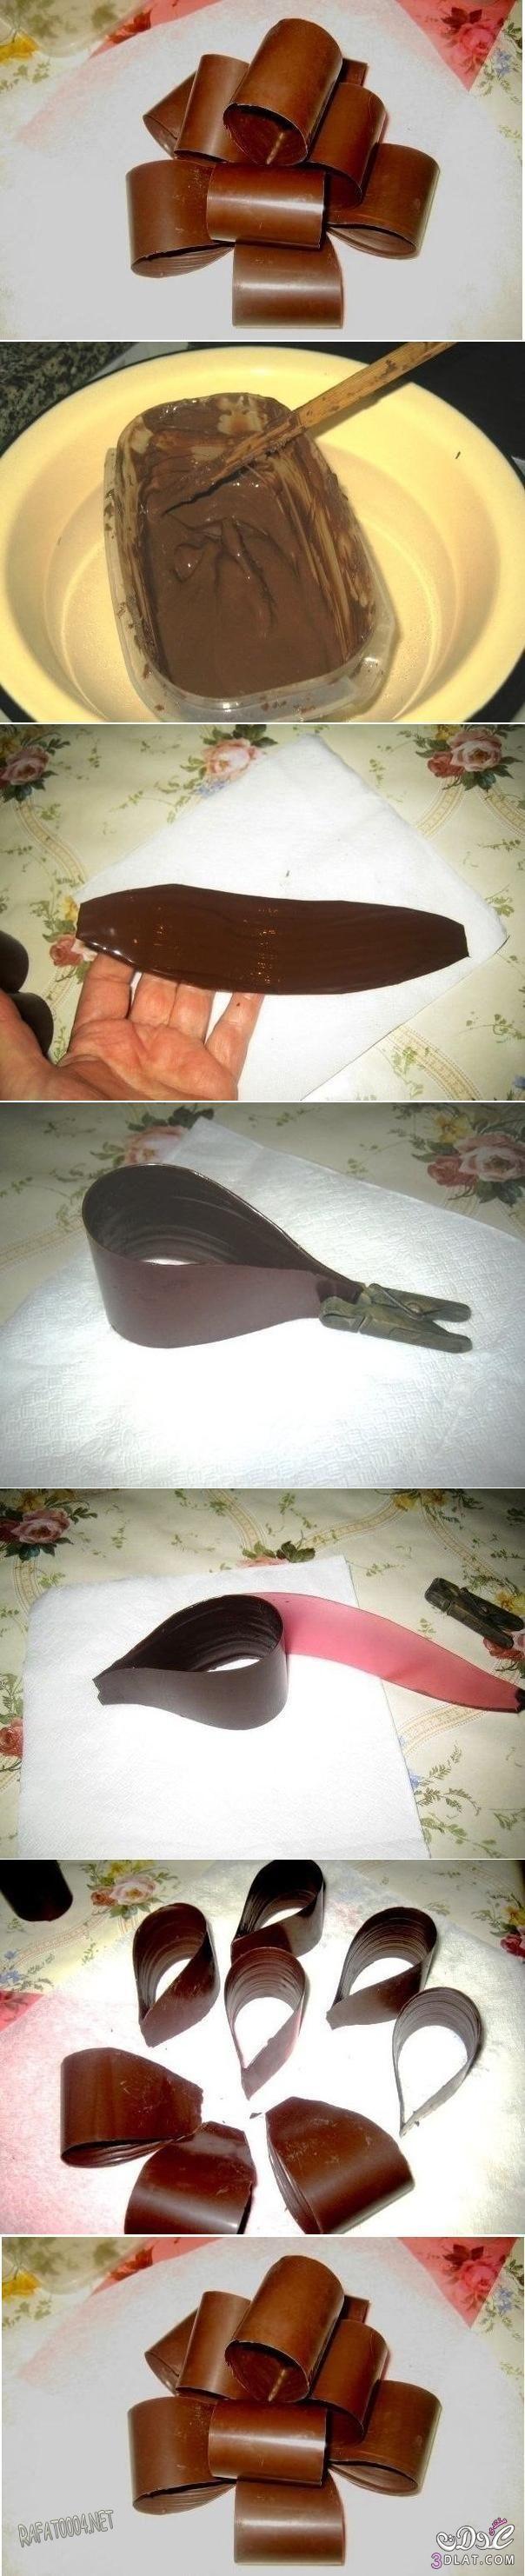 طريقة عمل وردة الشوكولاته لتزيين الكيك